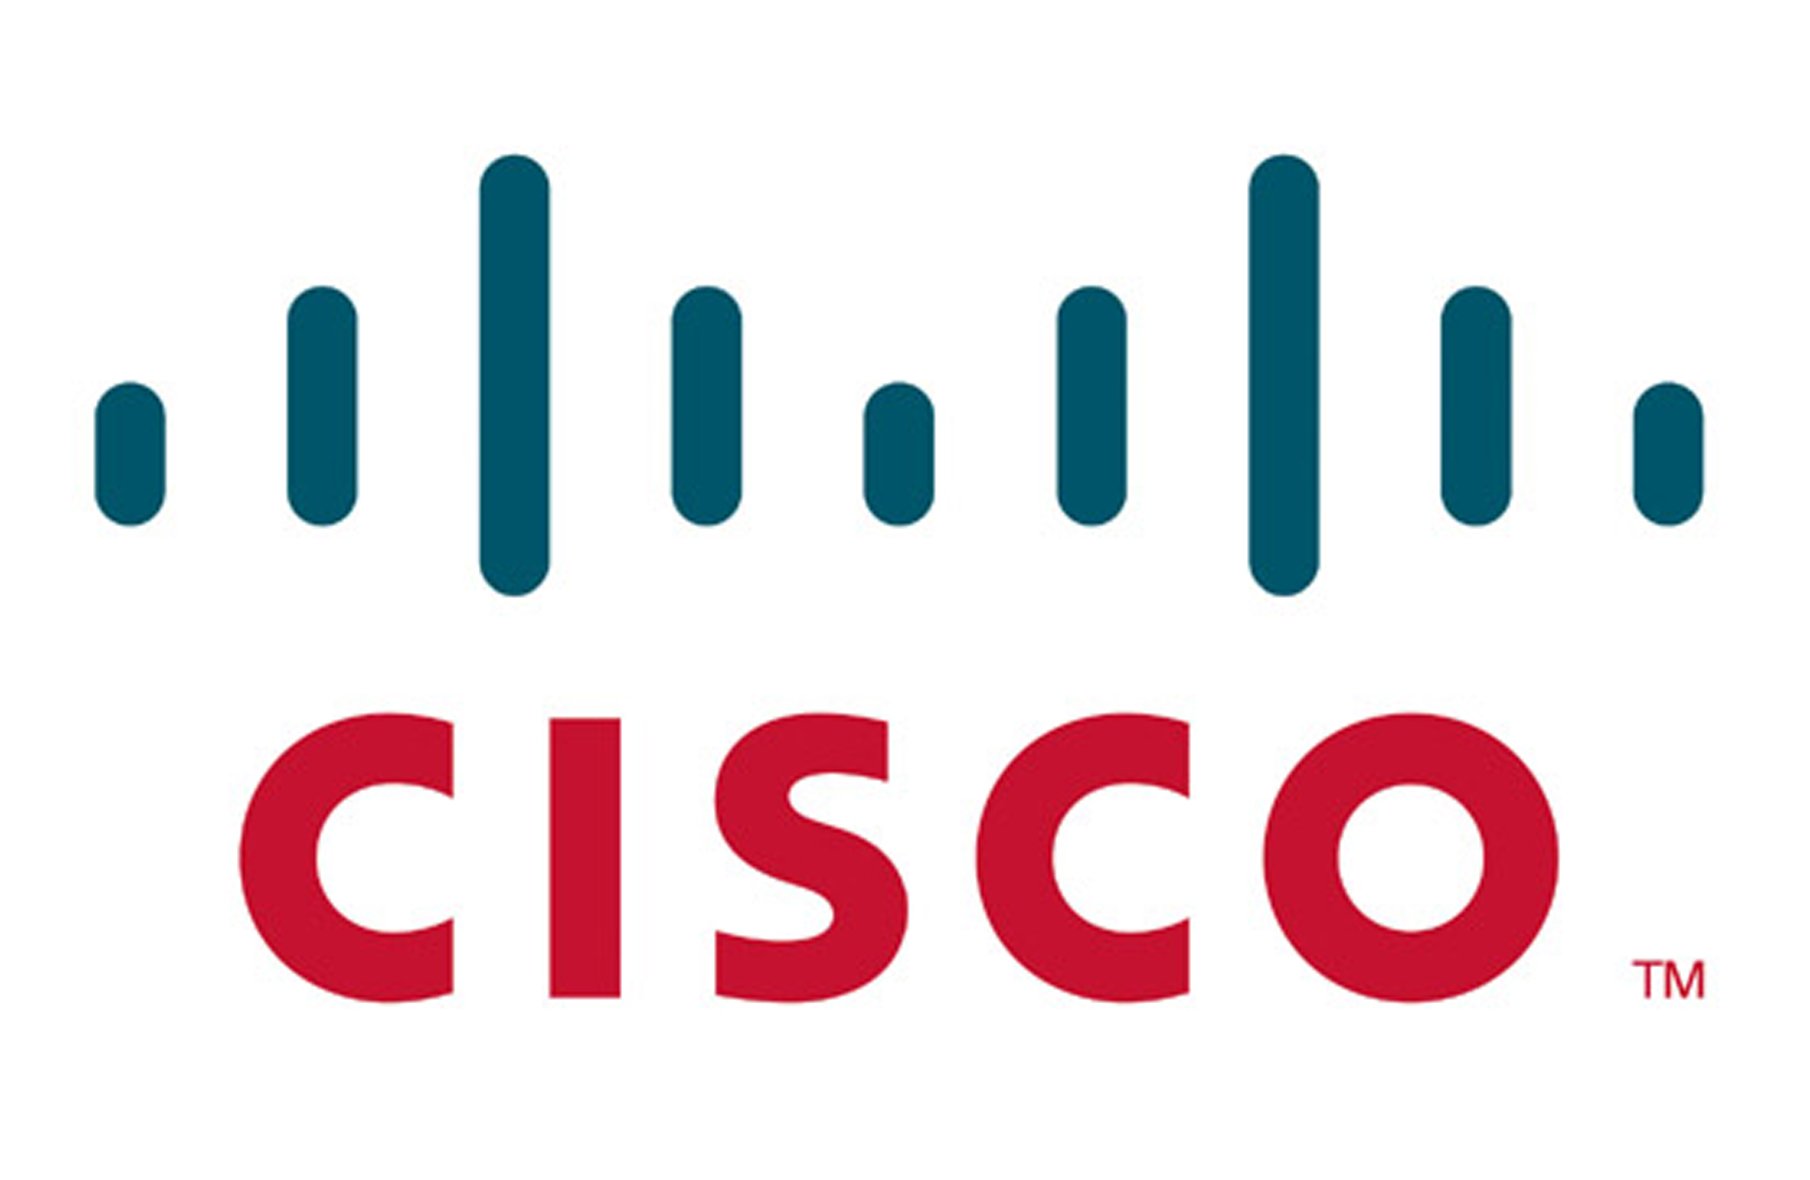 Cisco Colour logo